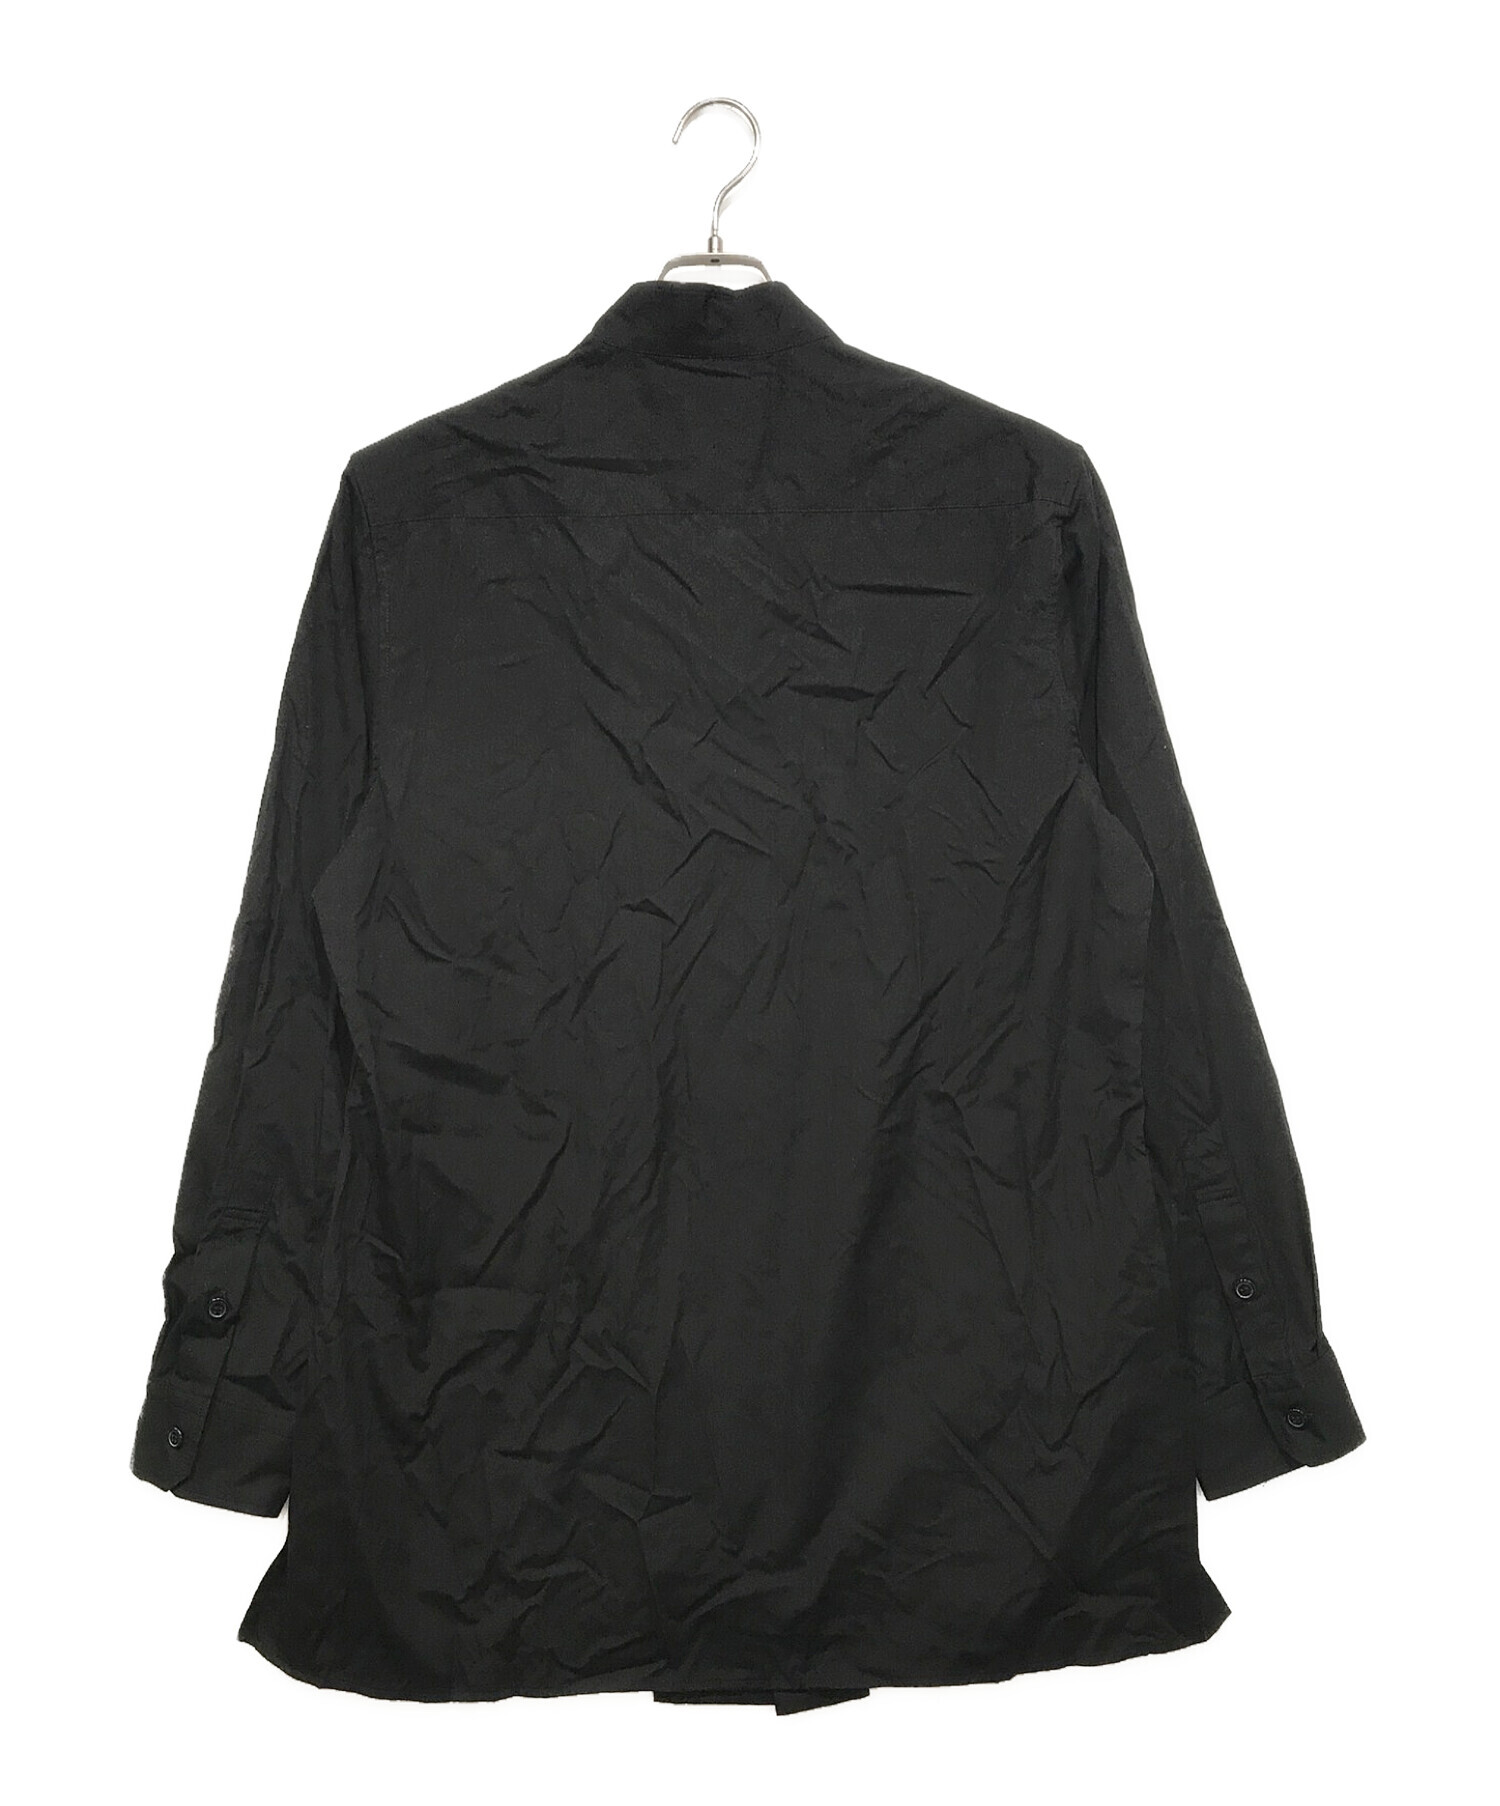 Yohji Yamamoto pour homme (ヨウジヤマモト プールオム) スタンドカラーシャツ ブラック サイズ:3